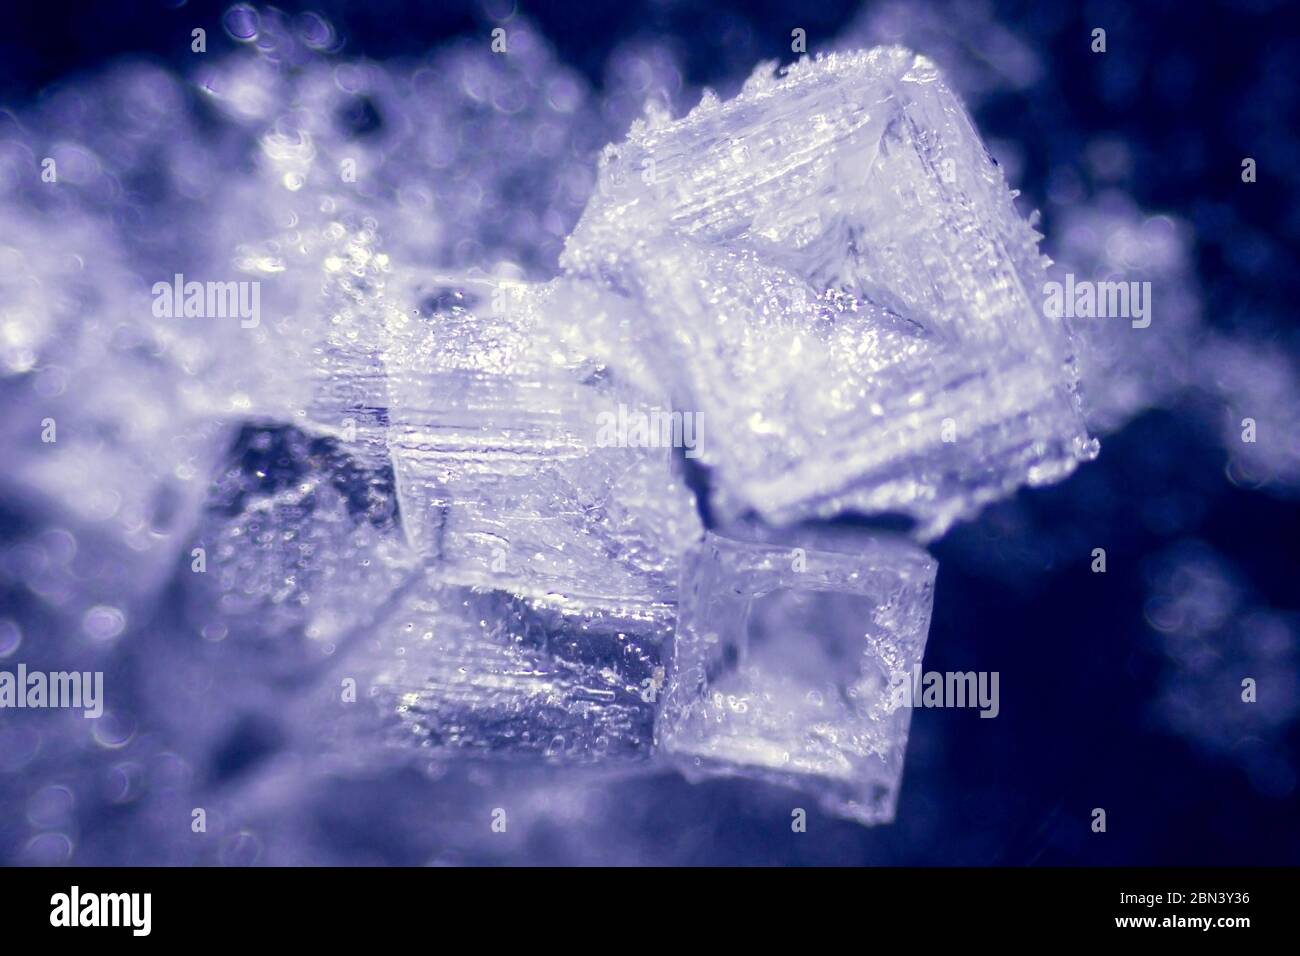 incredibili cristalli di sale al microscopio Foto stock - Alamy